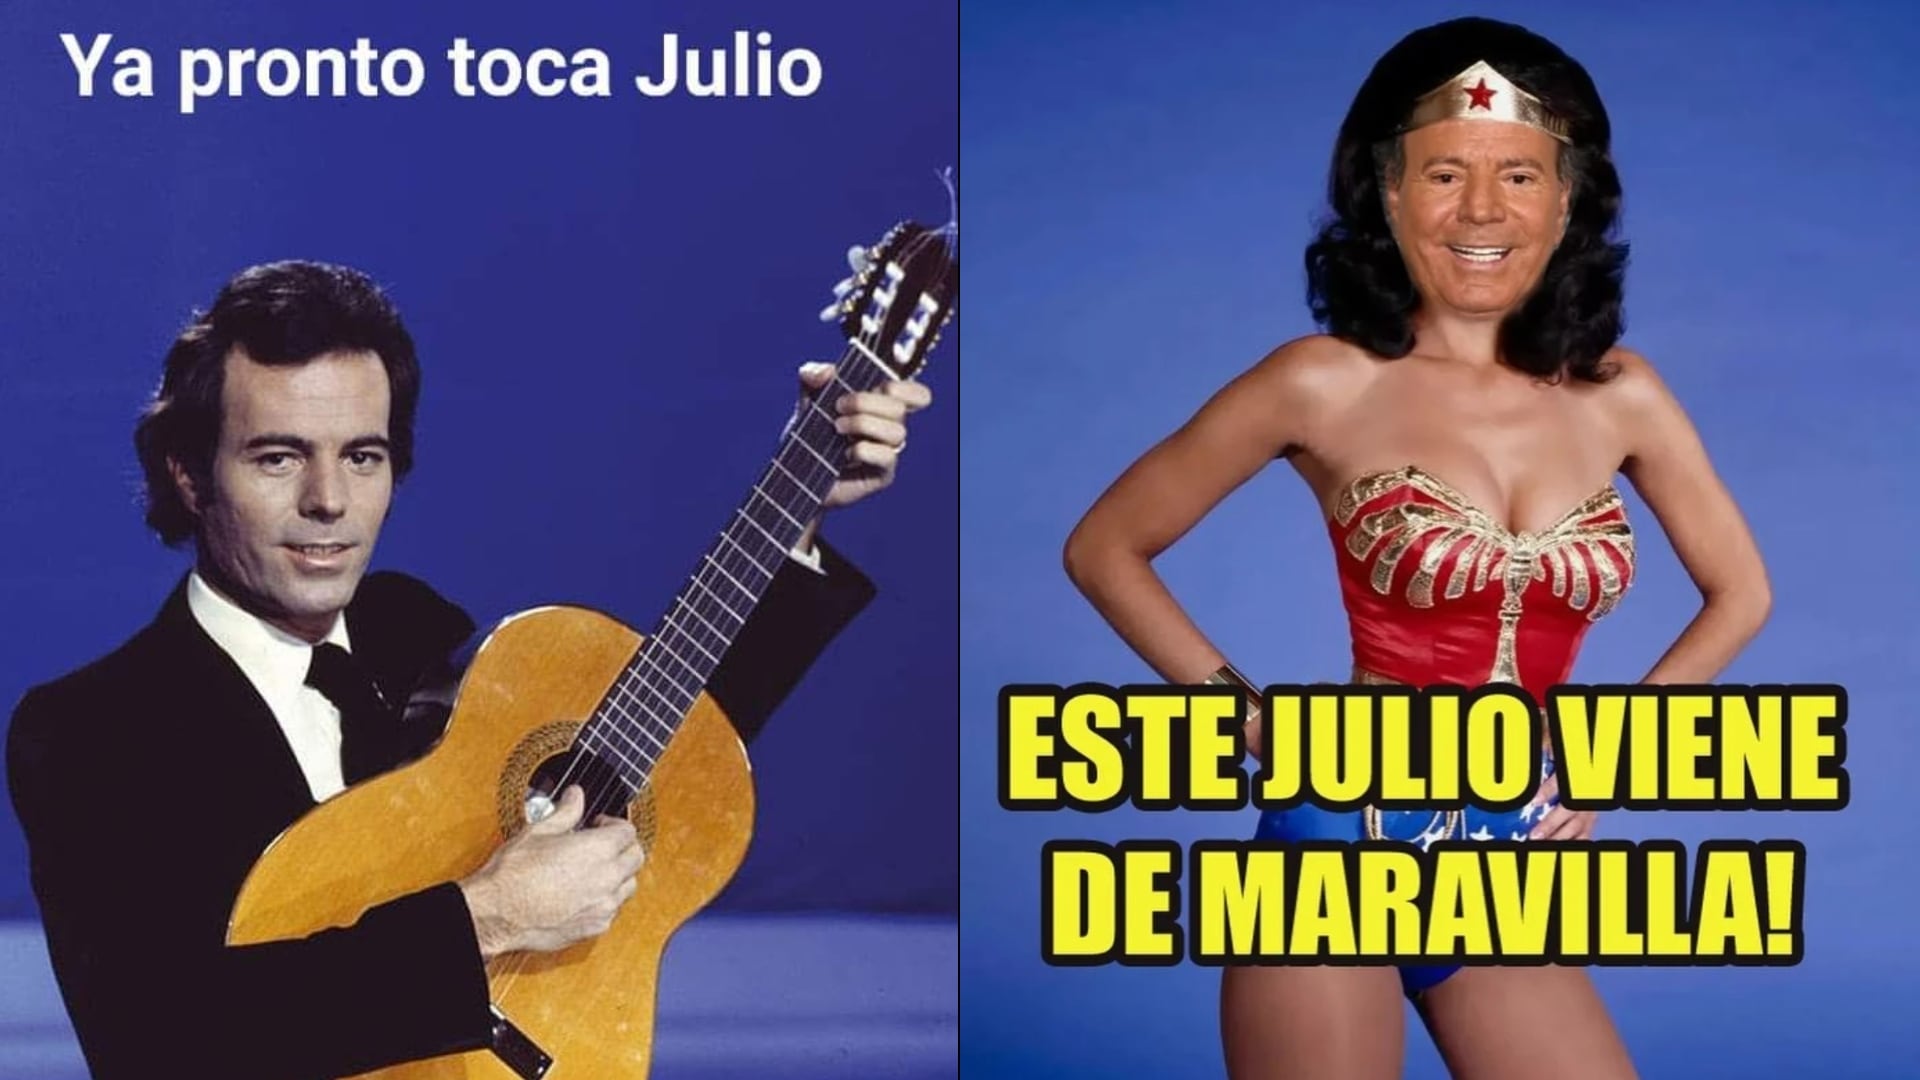 La tradición de darle la bienvenida al séptimo mes del año con memes de Julio Iglesias inició hace mucho tiempo